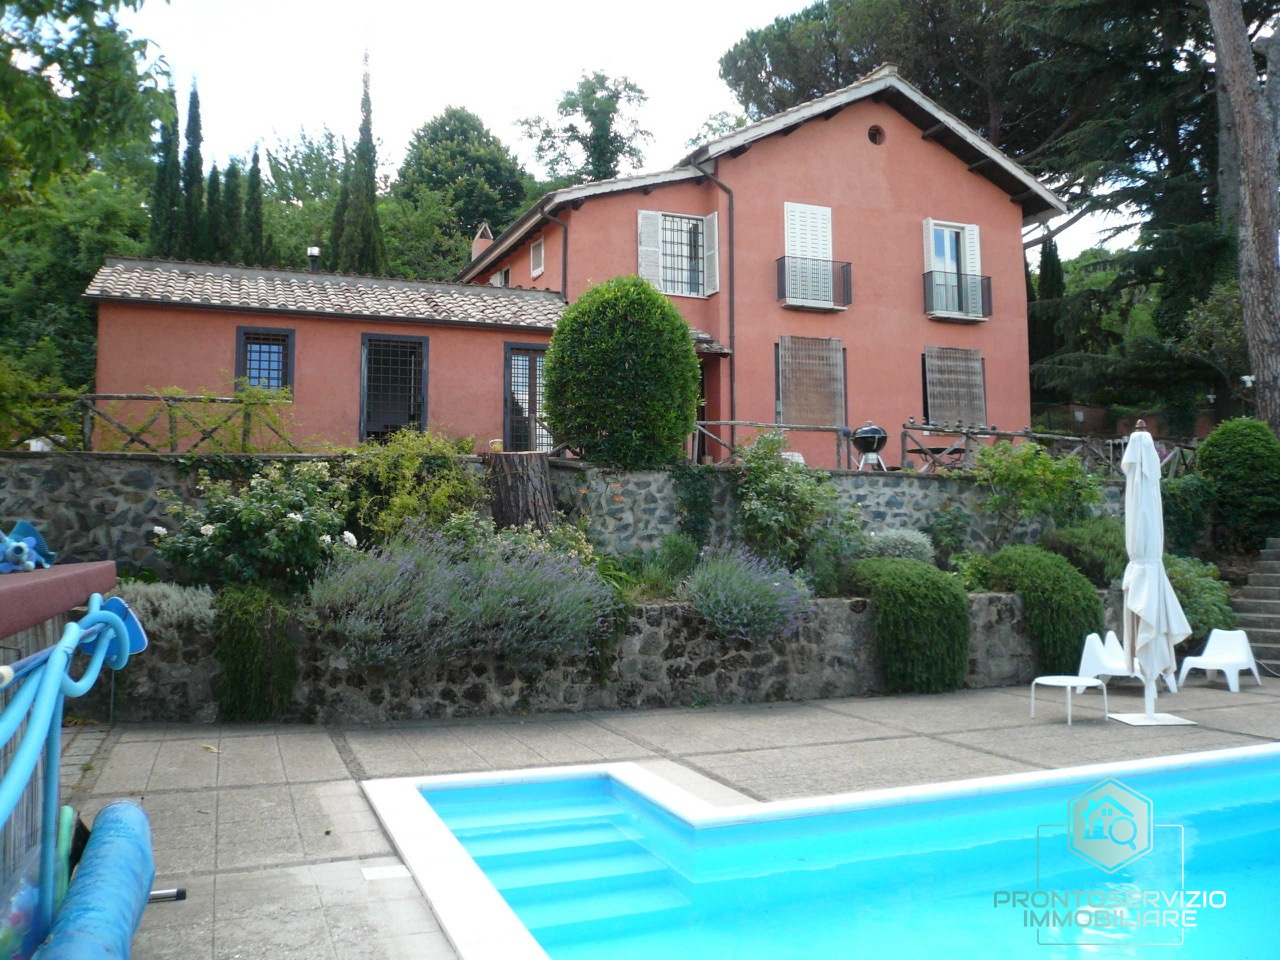 Villa in vendita a Monte Porzio Catone, 12 locali, prezzo € 750.000 | CambioCasa.it